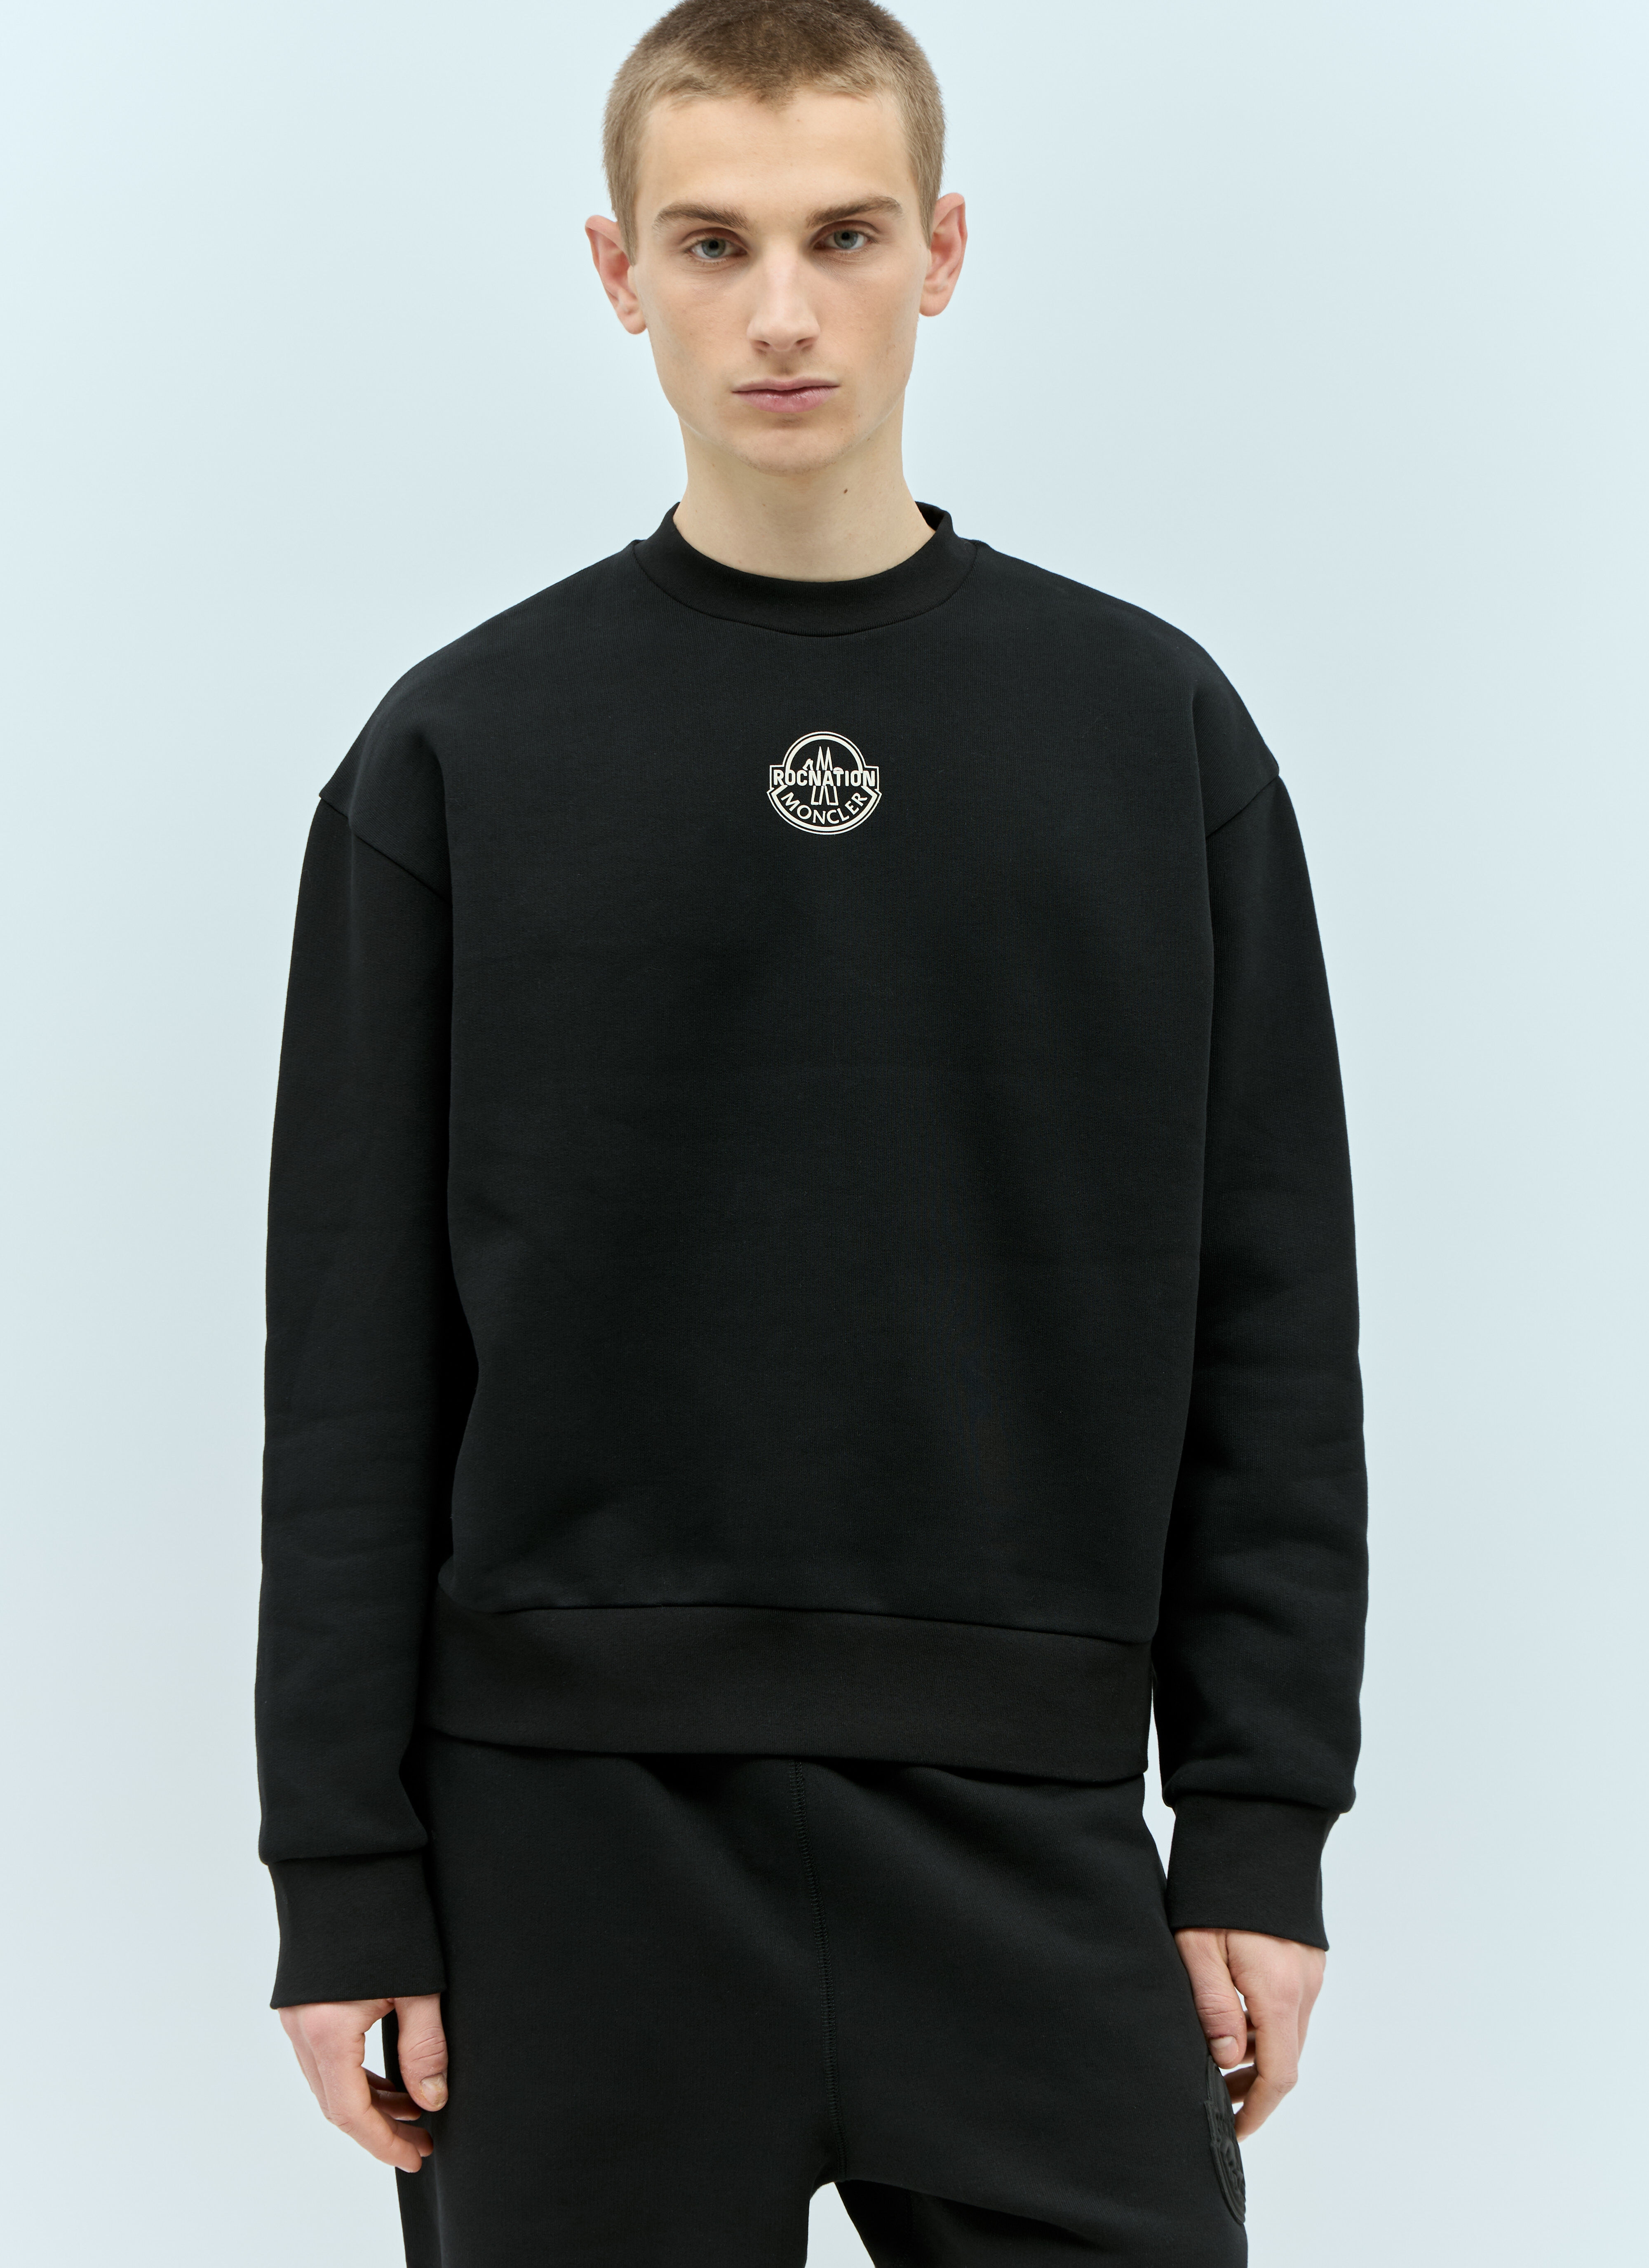 Moncler x Roc Nation designed by Jay-Z ロゴアップリケ スウェットシャツ ブラック mrn0156002